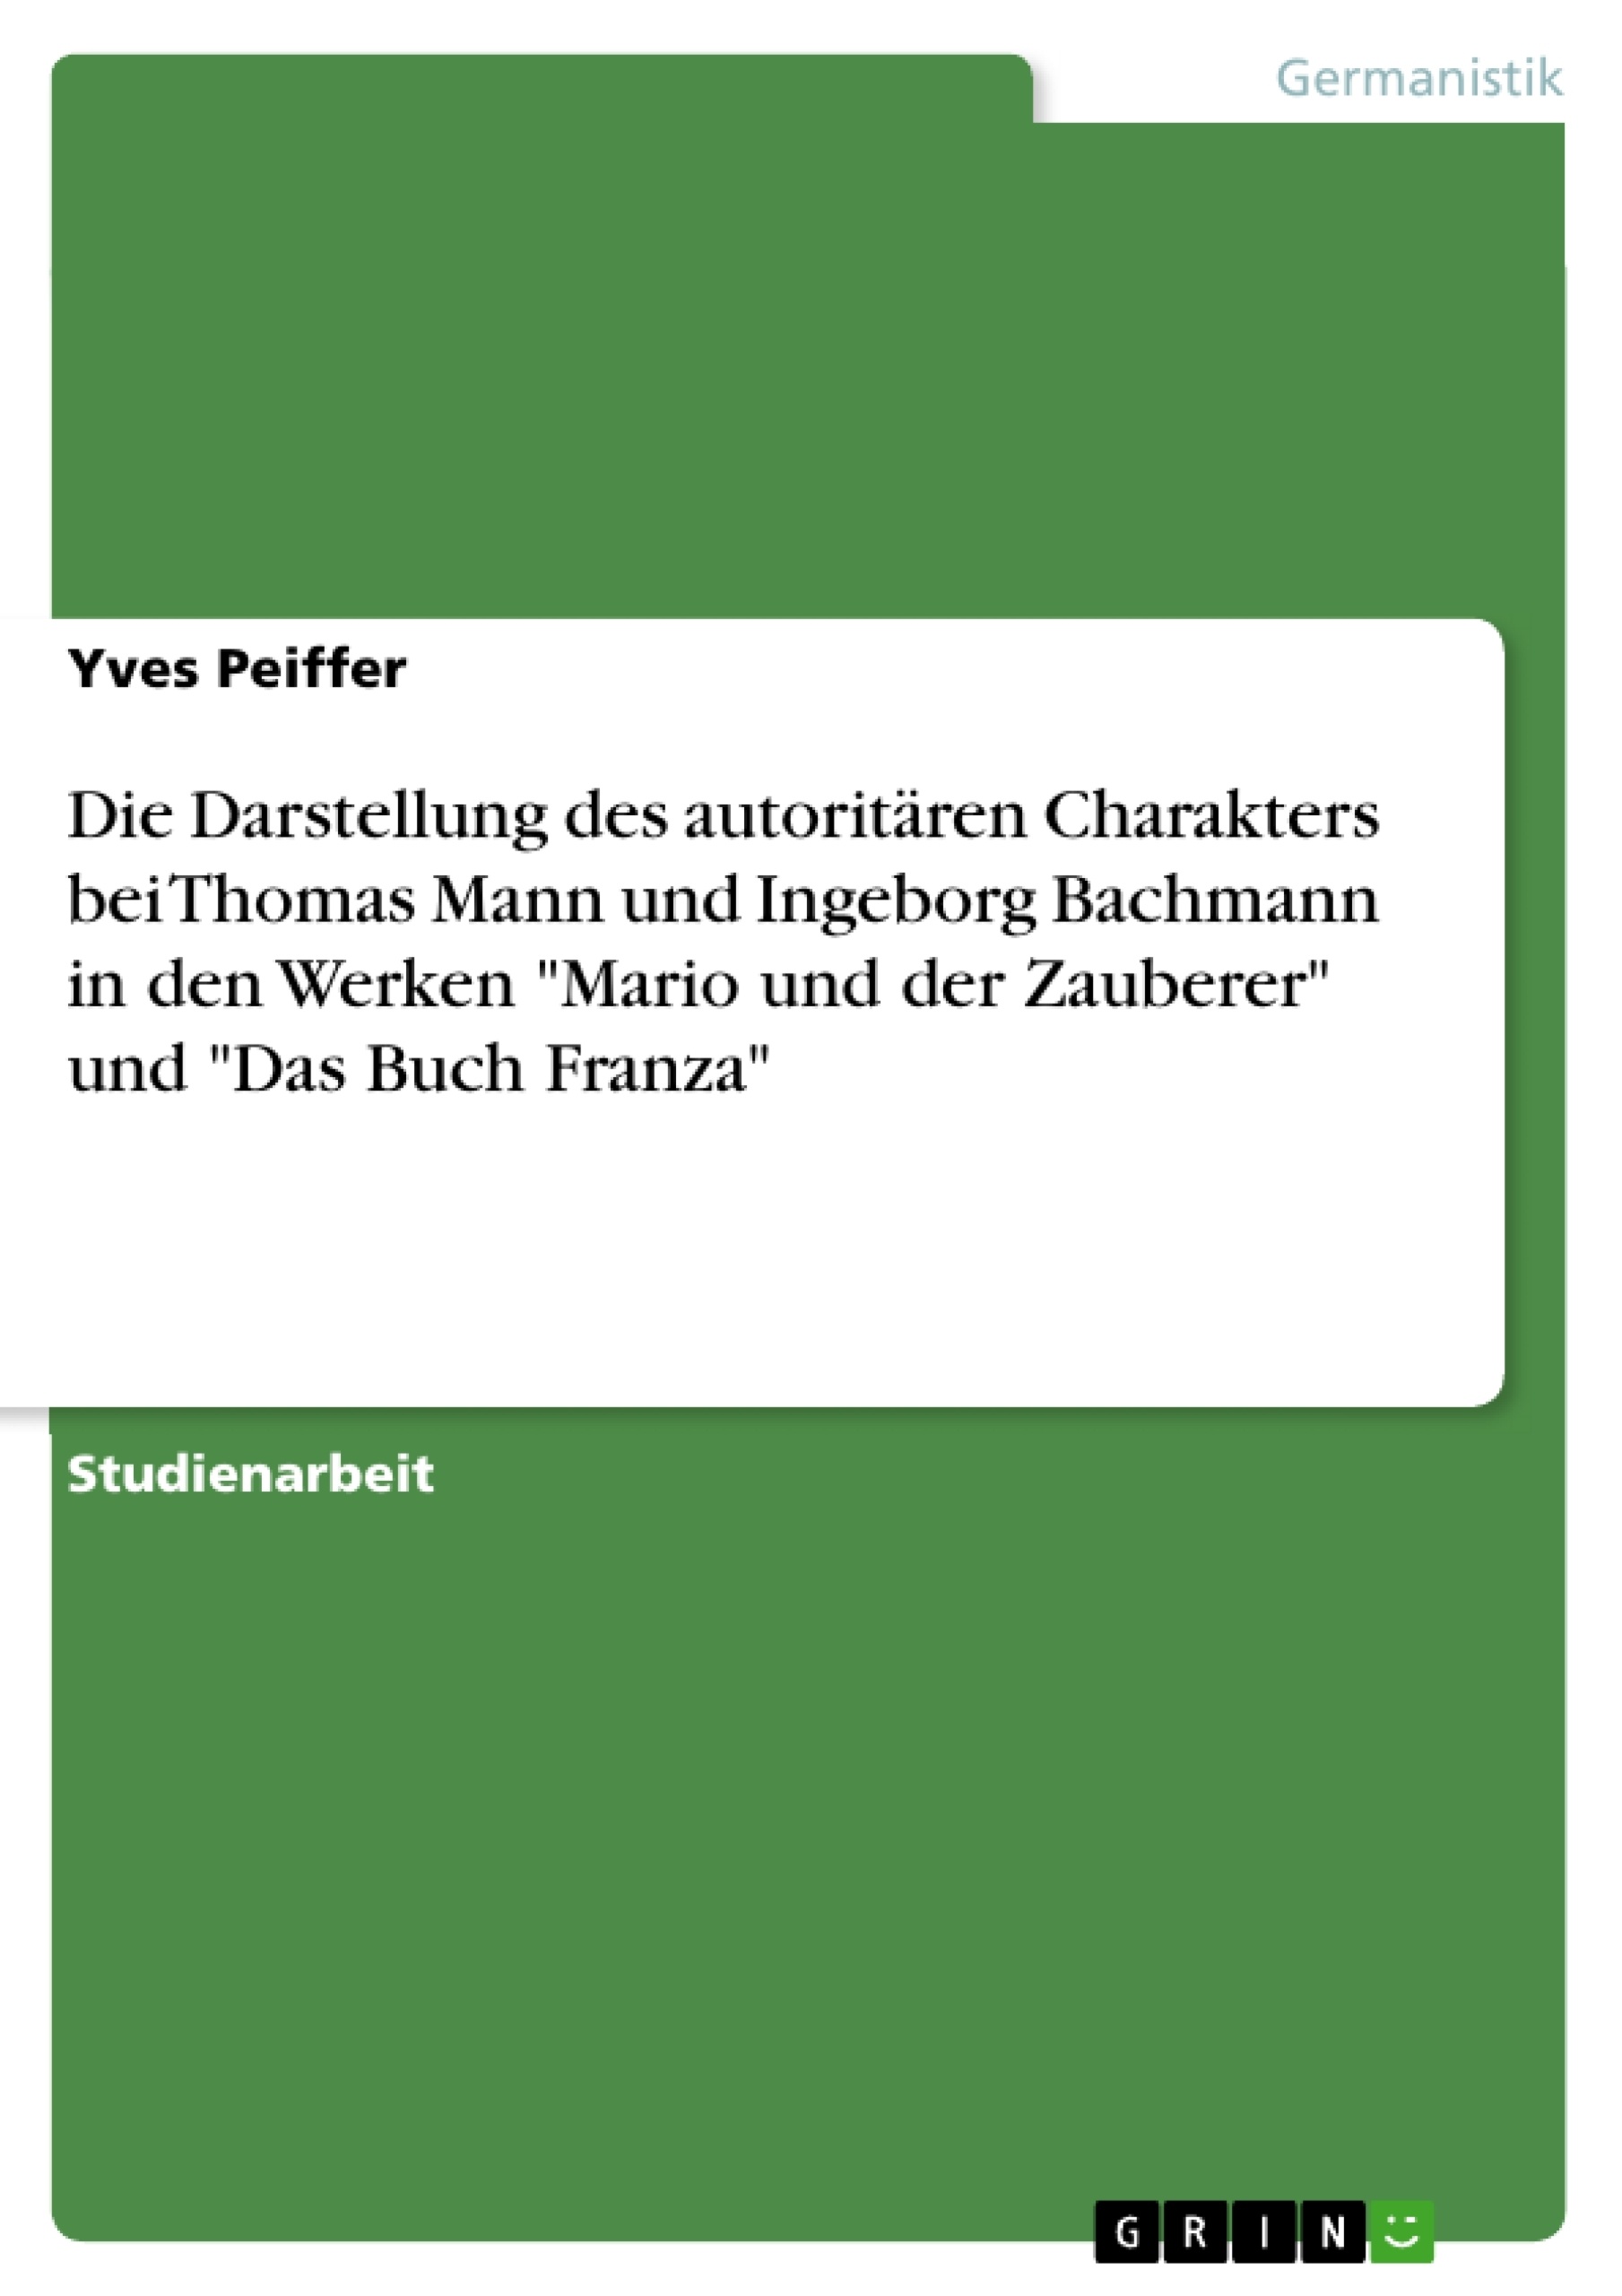 Titel: Die Darstellung des autoritären Charakters bei Thomas Mann und Ingeborg Bachmann in den Werken "Mario und der Zauberer" und "Das Buch Franza"